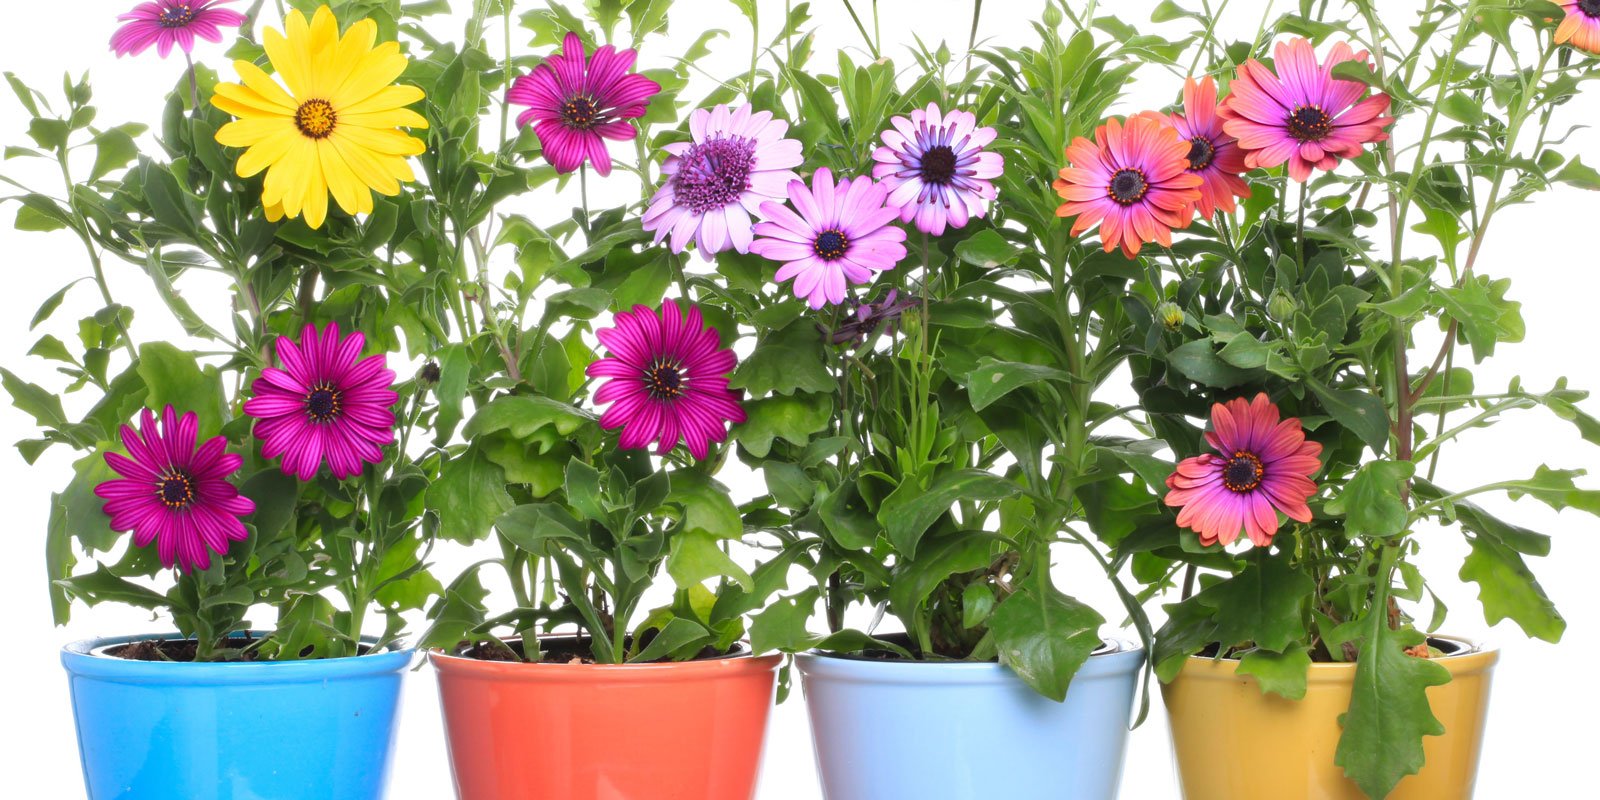 le piante fiorite a marzo per vasi e cassette cose di casa